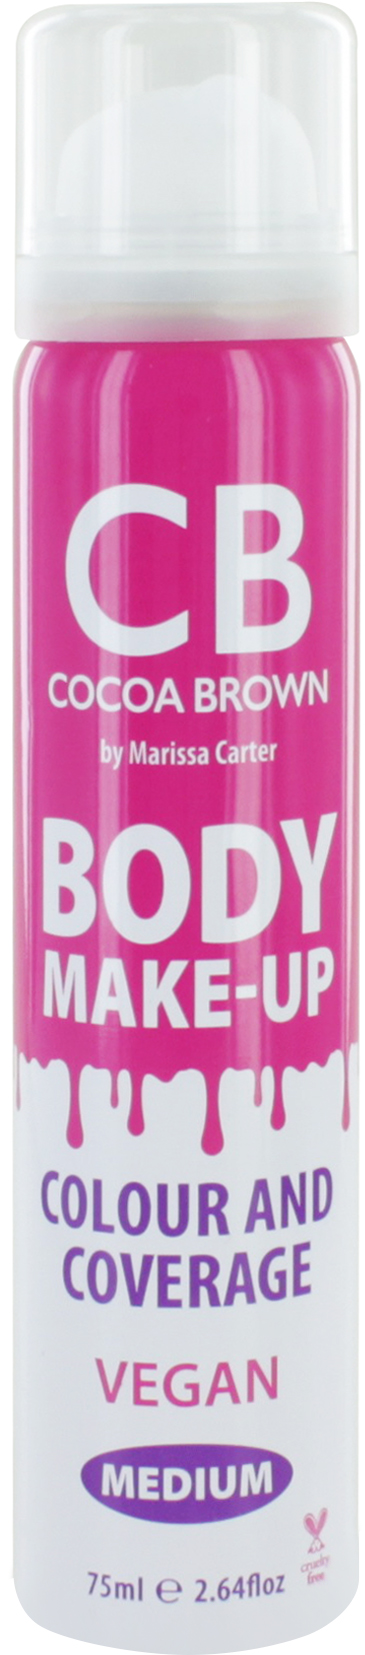 Cocoa Brown Body Make-up Medium Colour & Coverage 75 ml